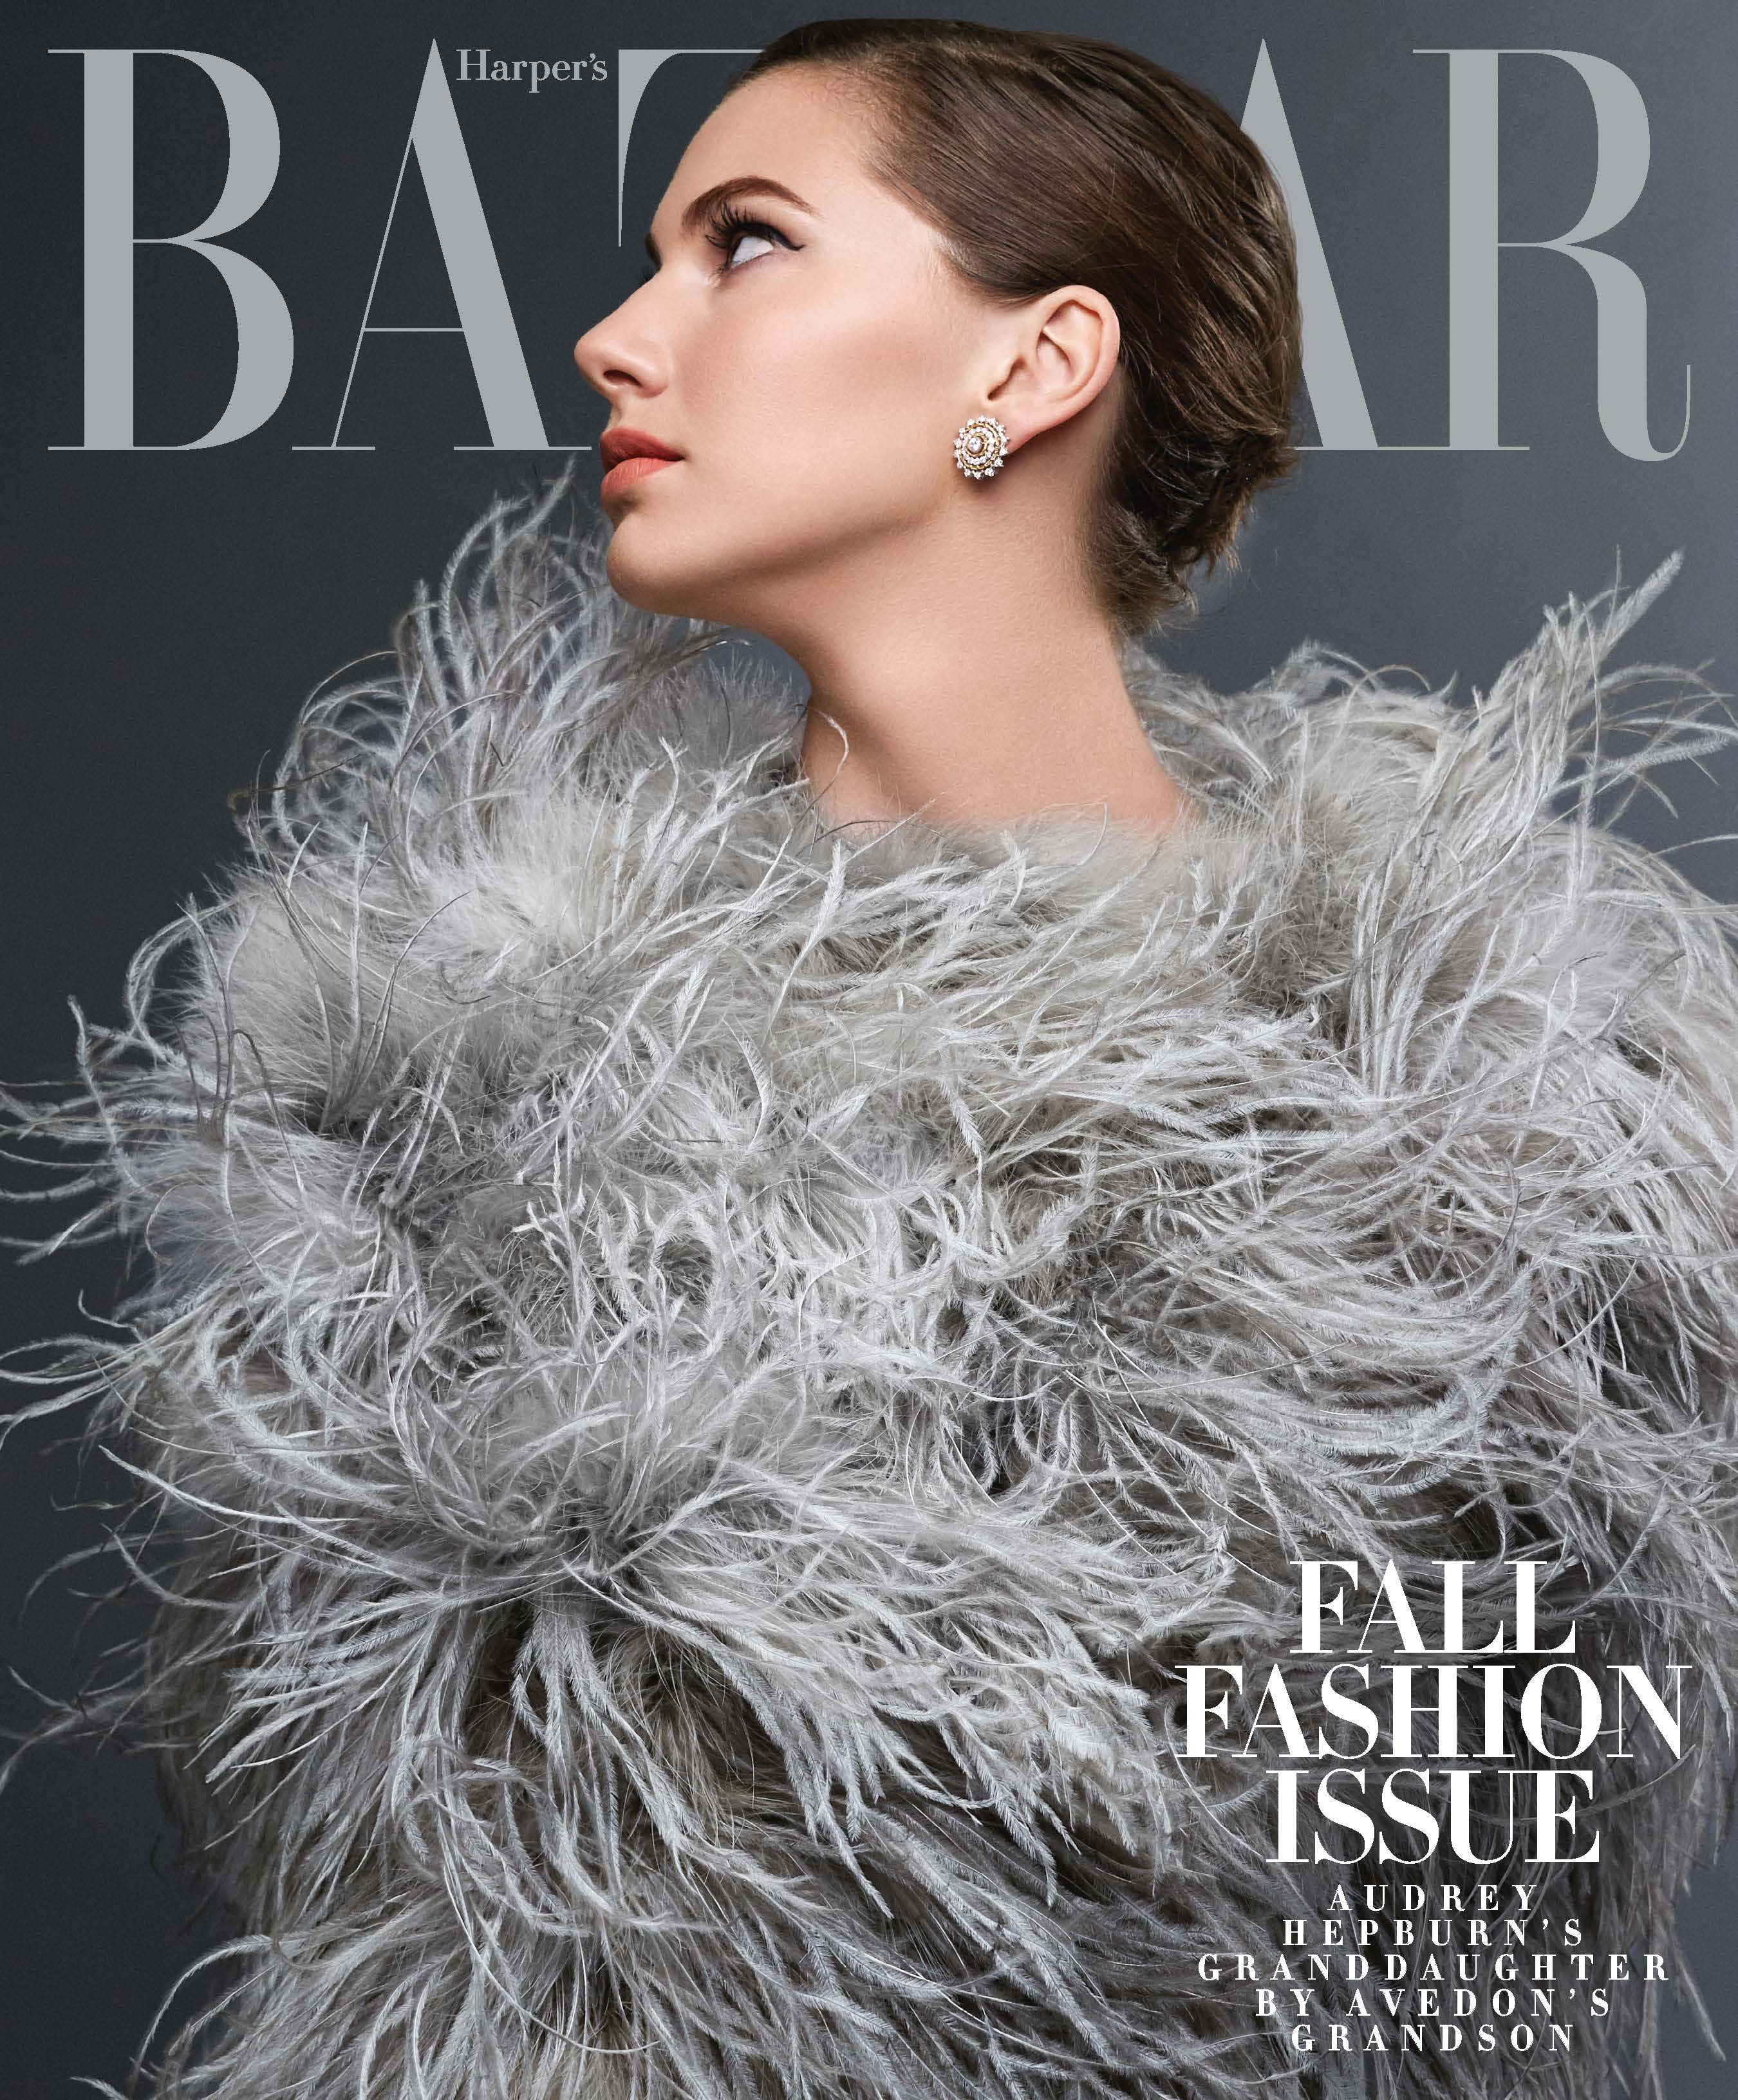 Harper's Bazaar-September 2014, "Emma Ferrer"